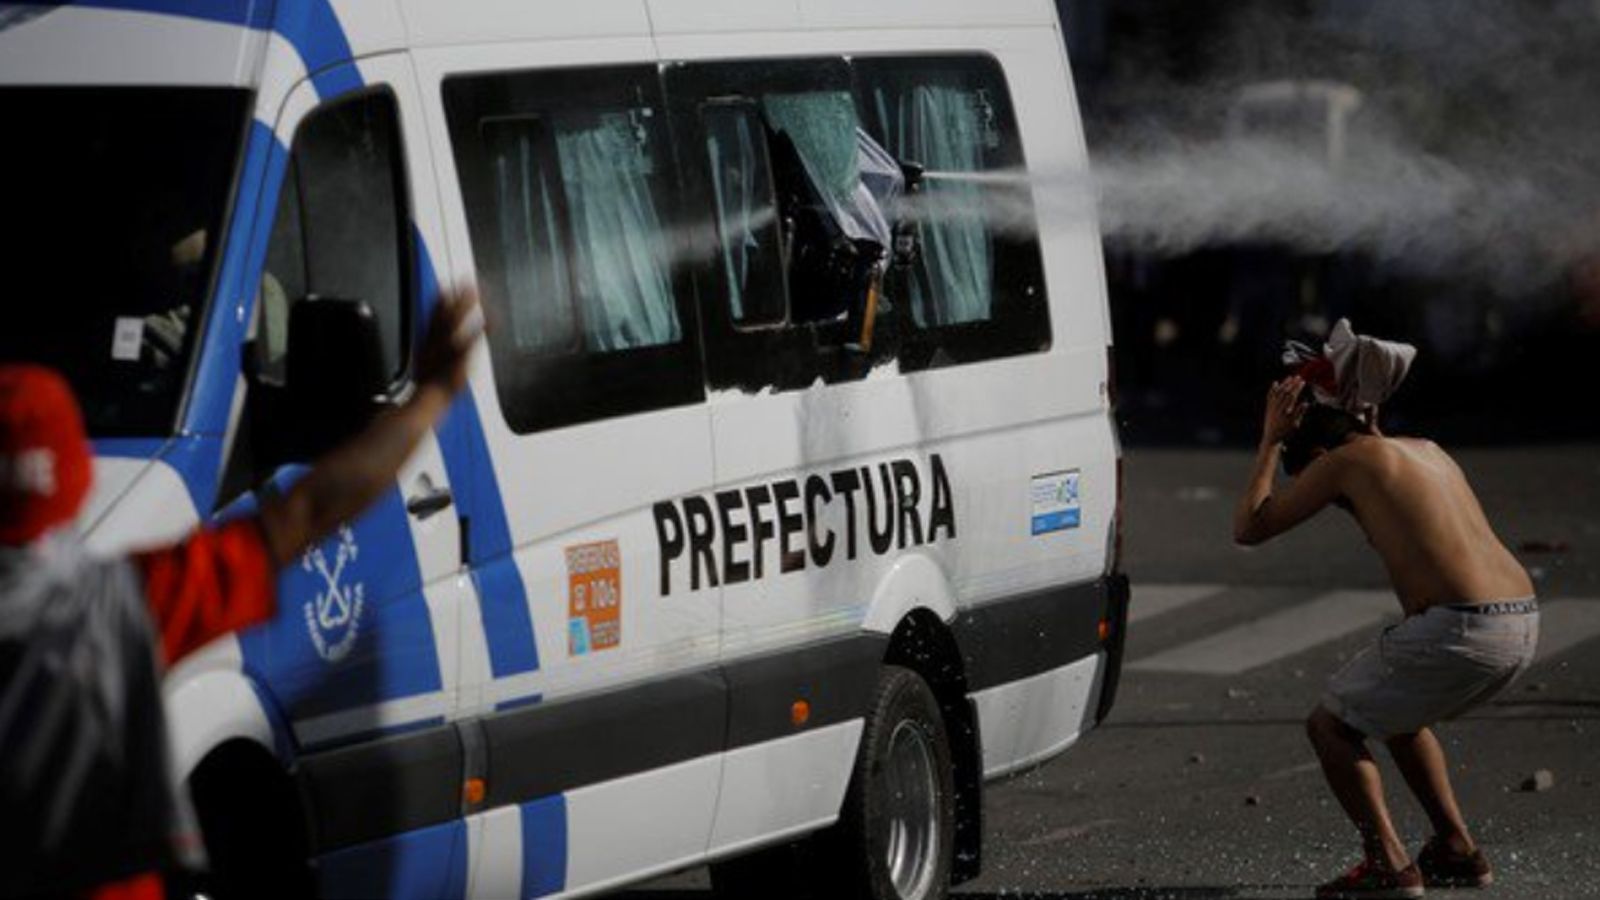 
                <strong>Polizei setzt Pfefferspray gegen Hooligans ein</strong><br>
                Durch die eingeworfenen Fensterscheiben am Teambus kam außerdem von der Polizei gegen die Hooligans eingesetztes Tränengas in den Spielerbus.
              